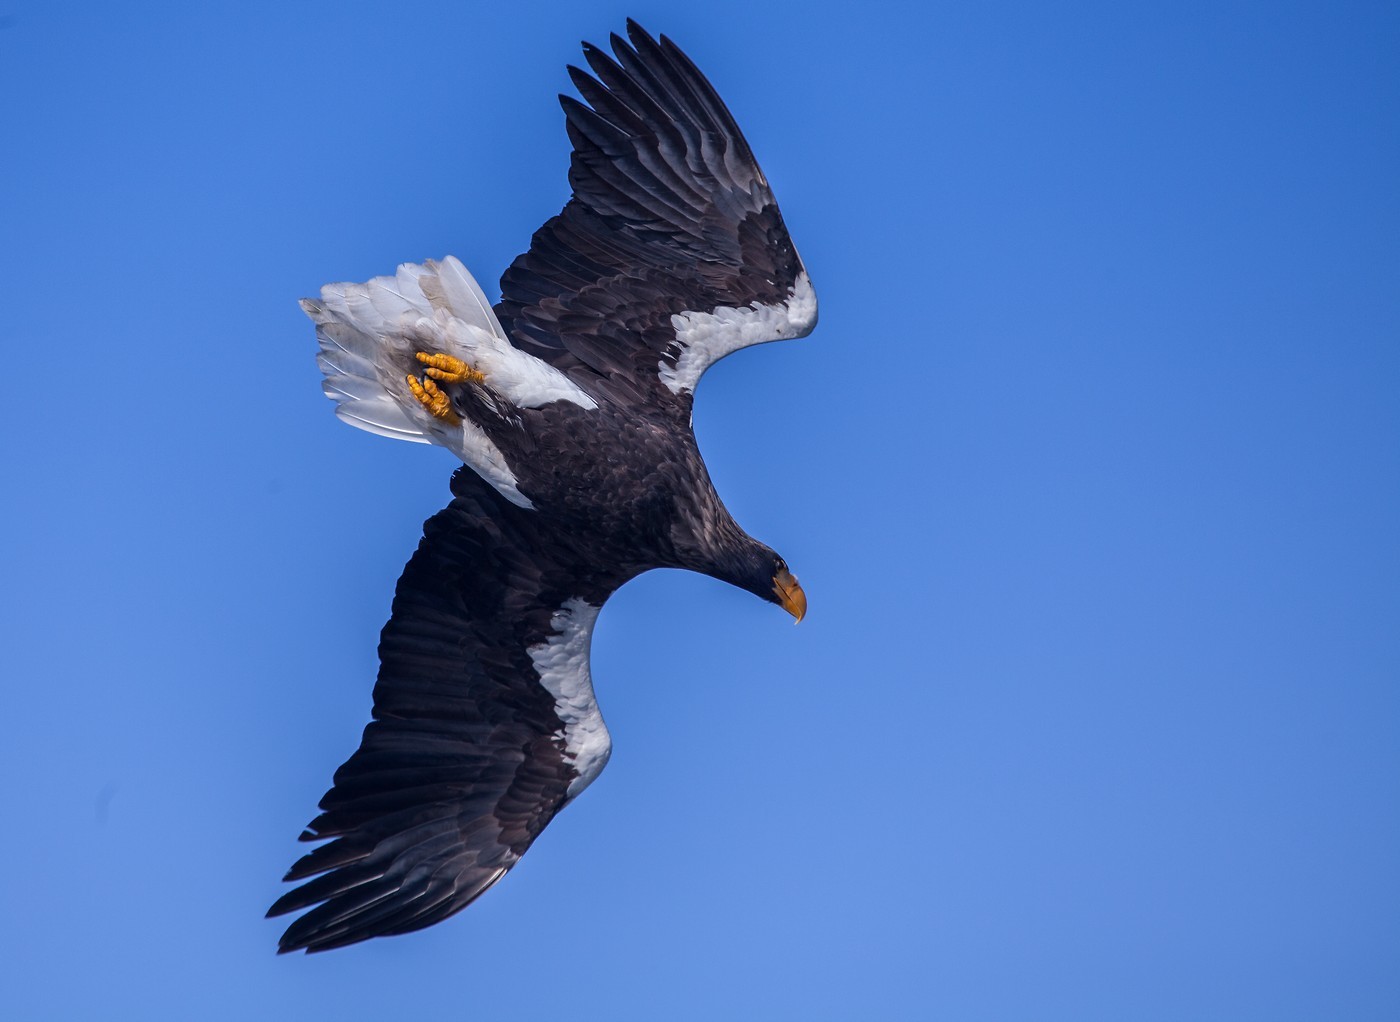 Skouer Eagle